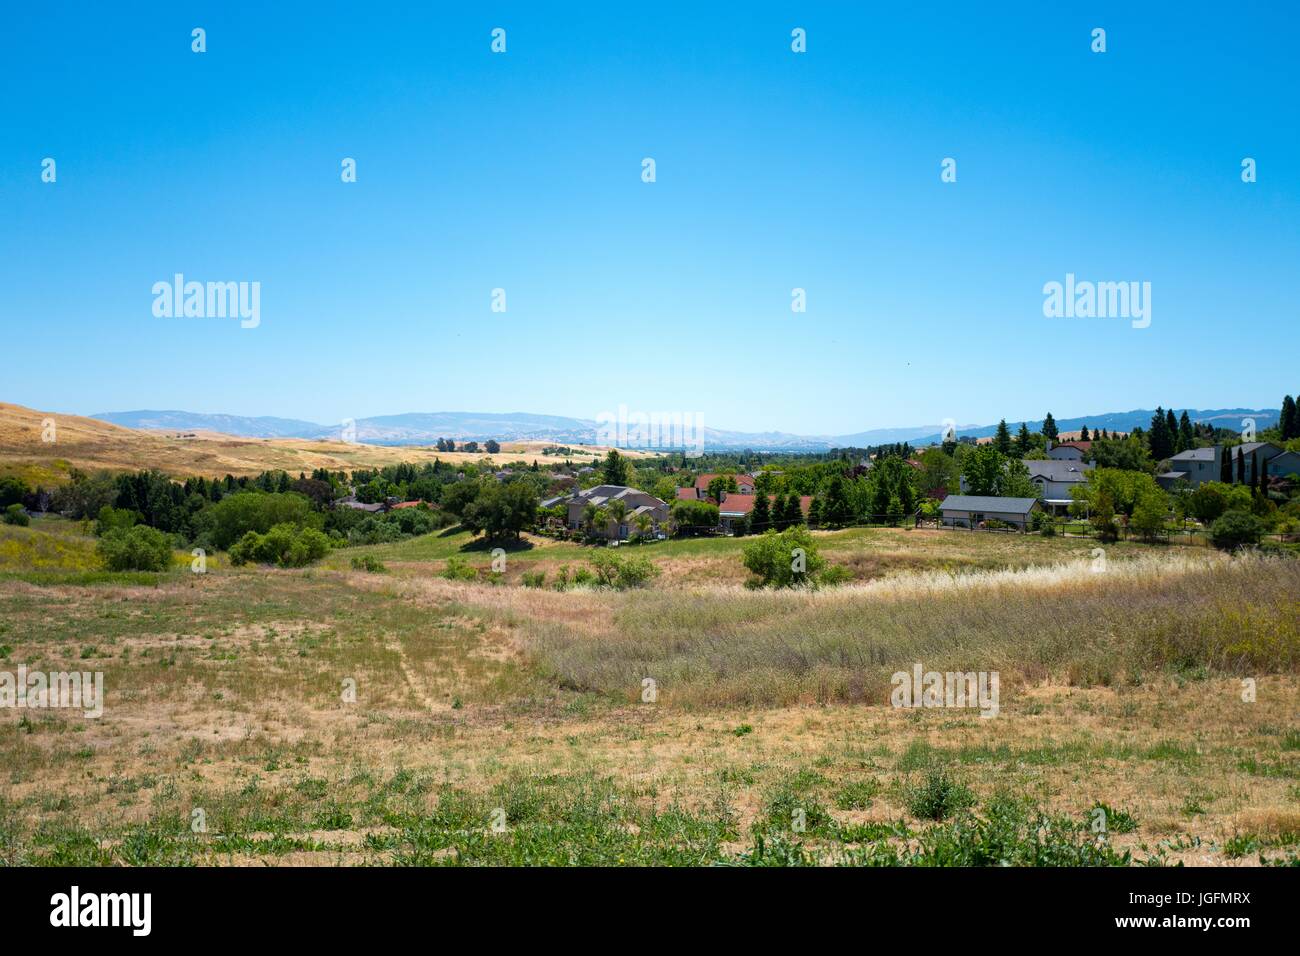 L'herbe sèche, de nouvelles maisons, et les collines sont visibles dans la vallée de San Ramon, une partie de l'East Bay, partie de la région de la baie de San Francisco, San Ramon, Californie, le 4 juin 2017. Banque D'Images